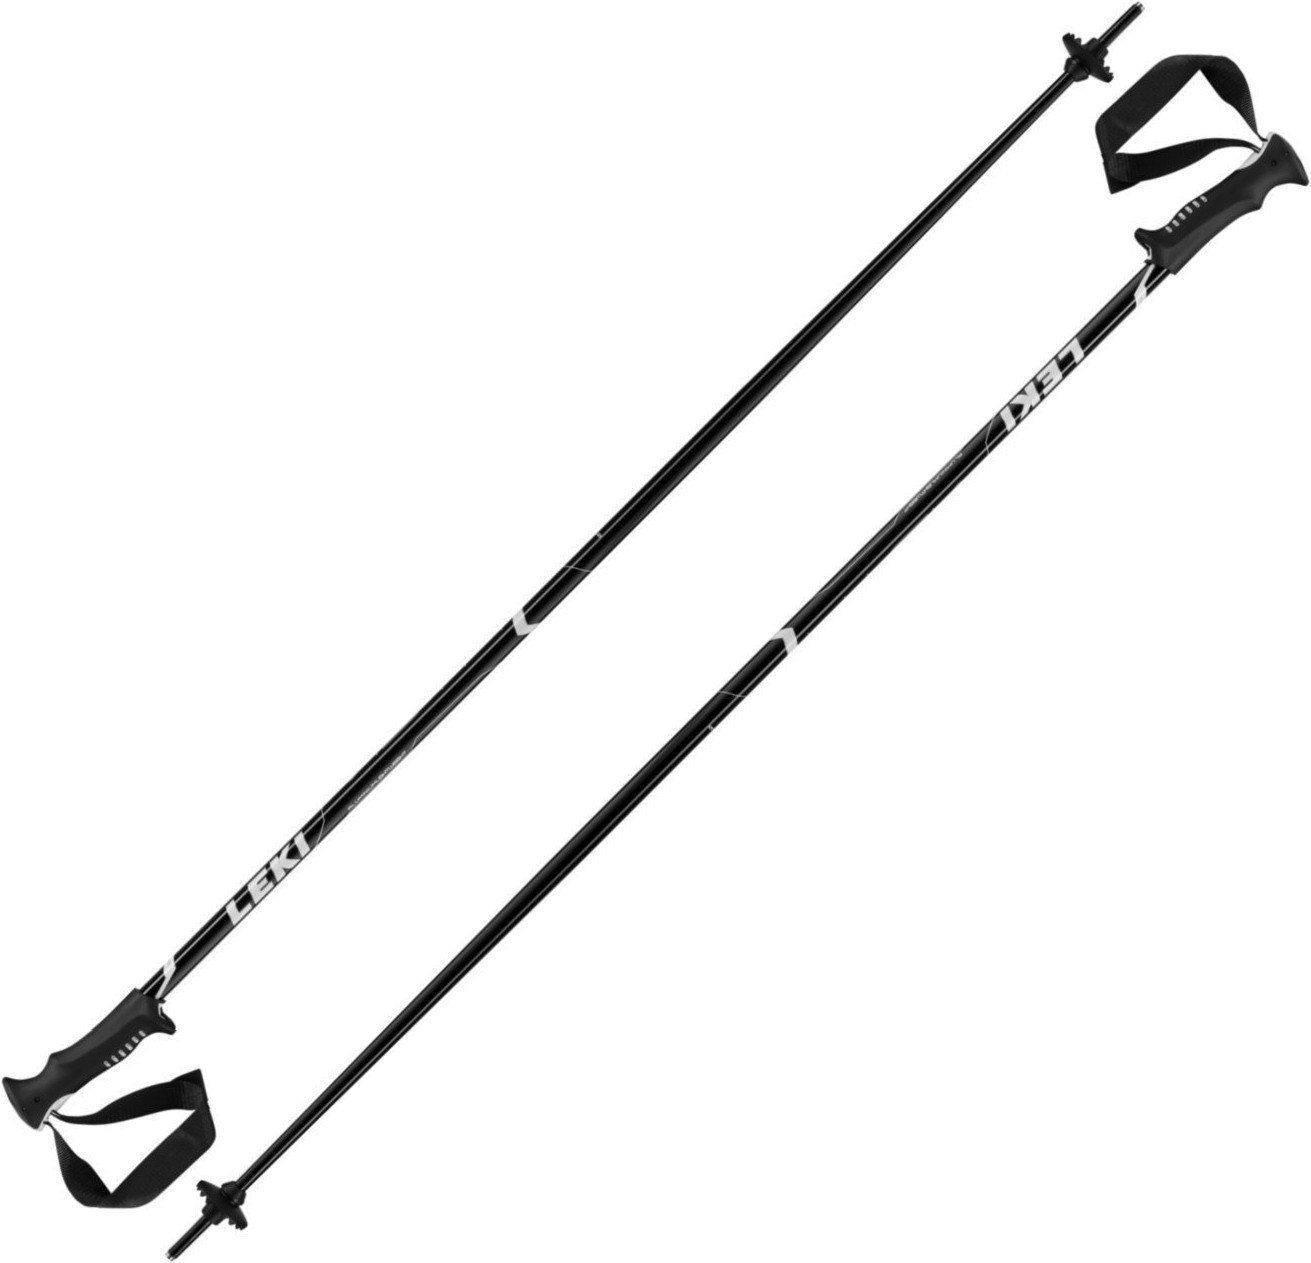 Ski Poles Leki Vista Black/White-Silver 135 18/19